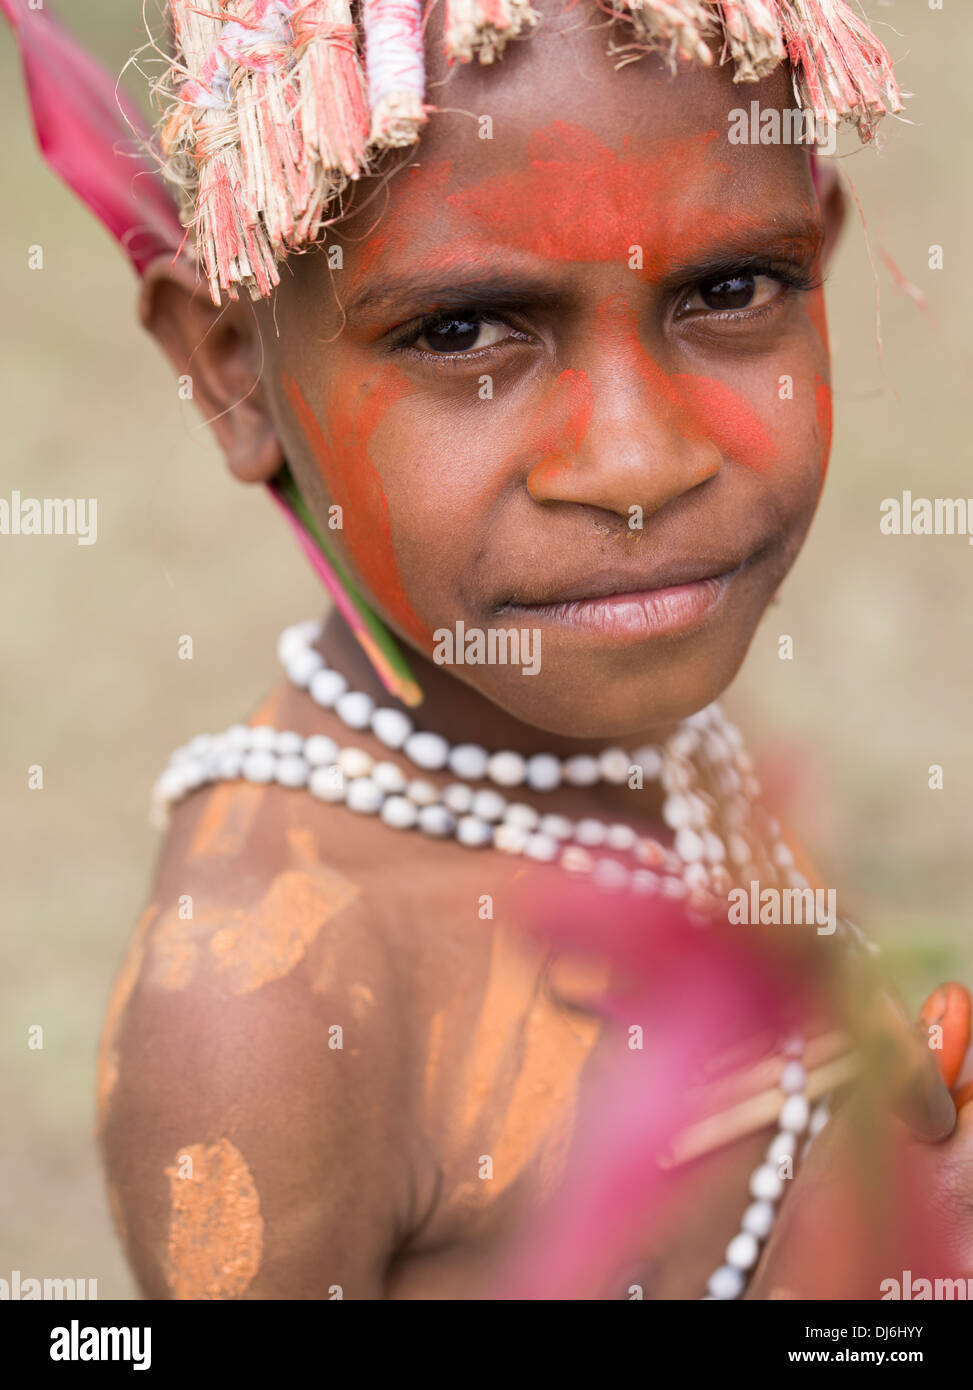 Papua new guinea child from Banque de photographies et d'images à haute  résolution - Alamy